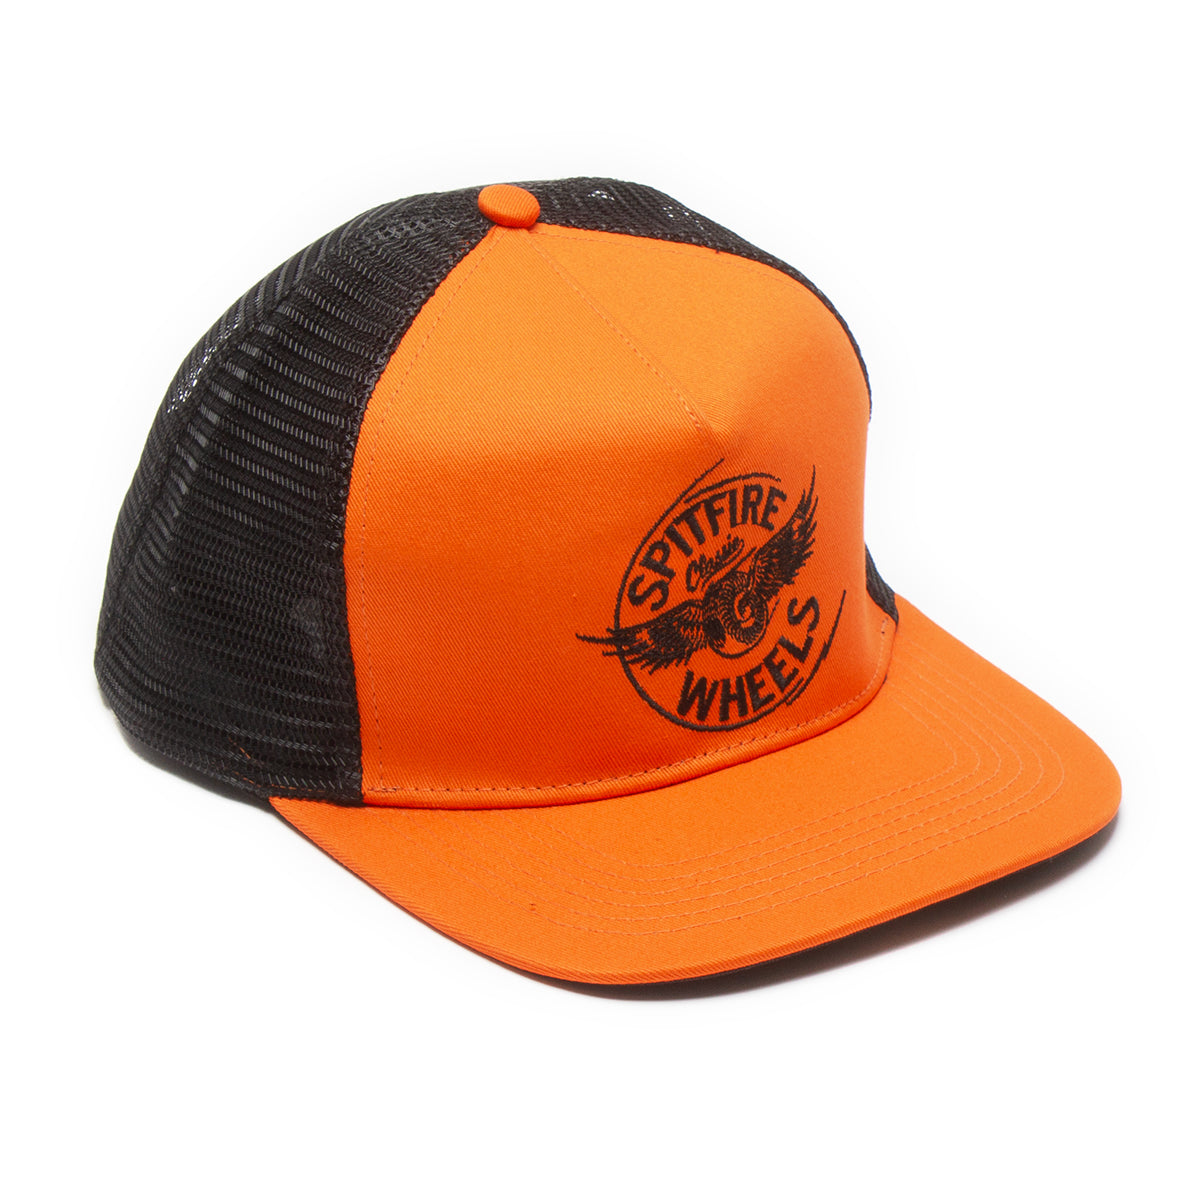 Spitfire | Flying Hat Style # 50010219B00 Color : Orange / Black